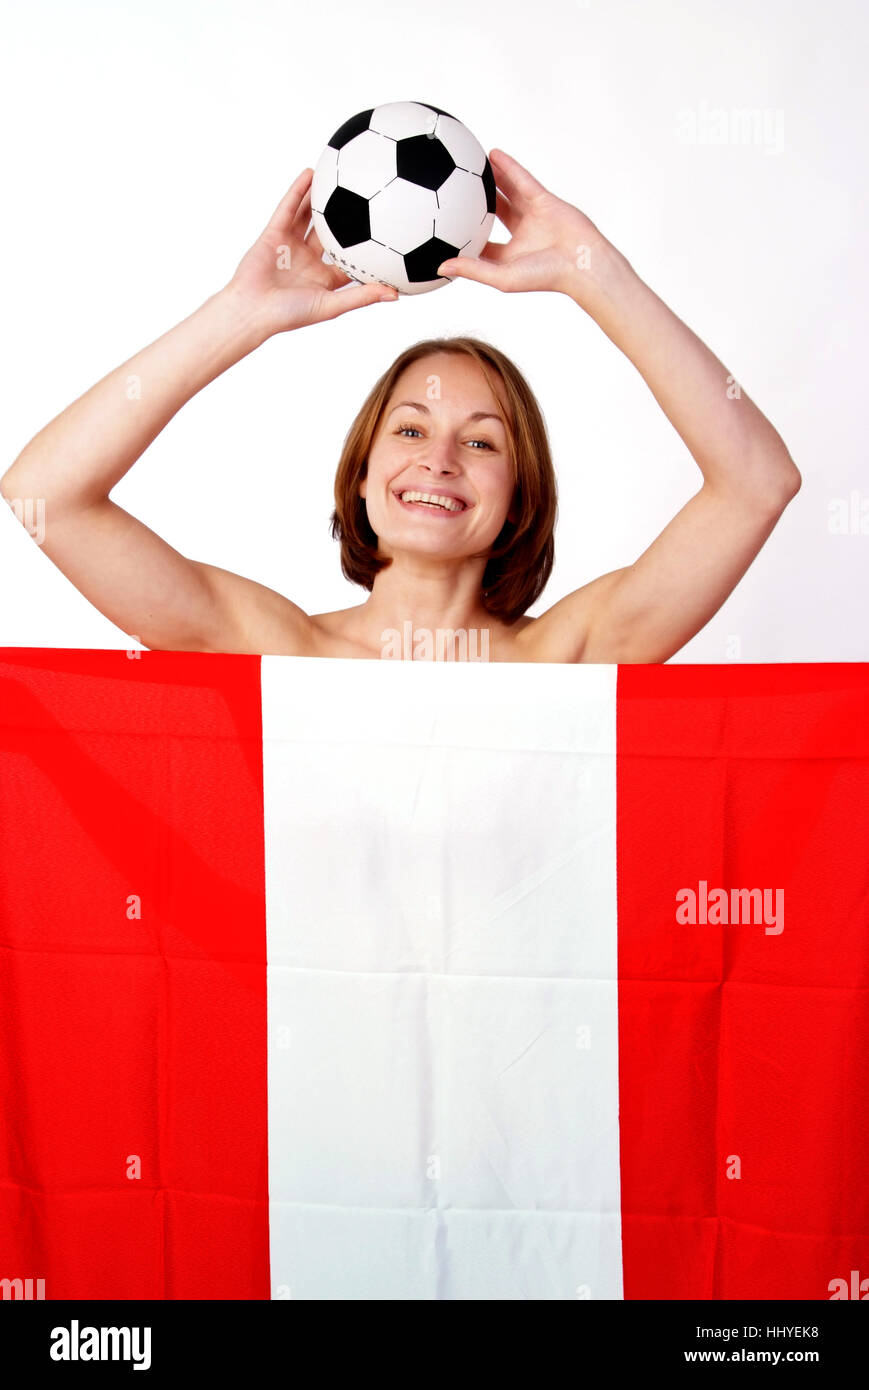 Frau mit Fußball und österreichische Flagge Stockfoto